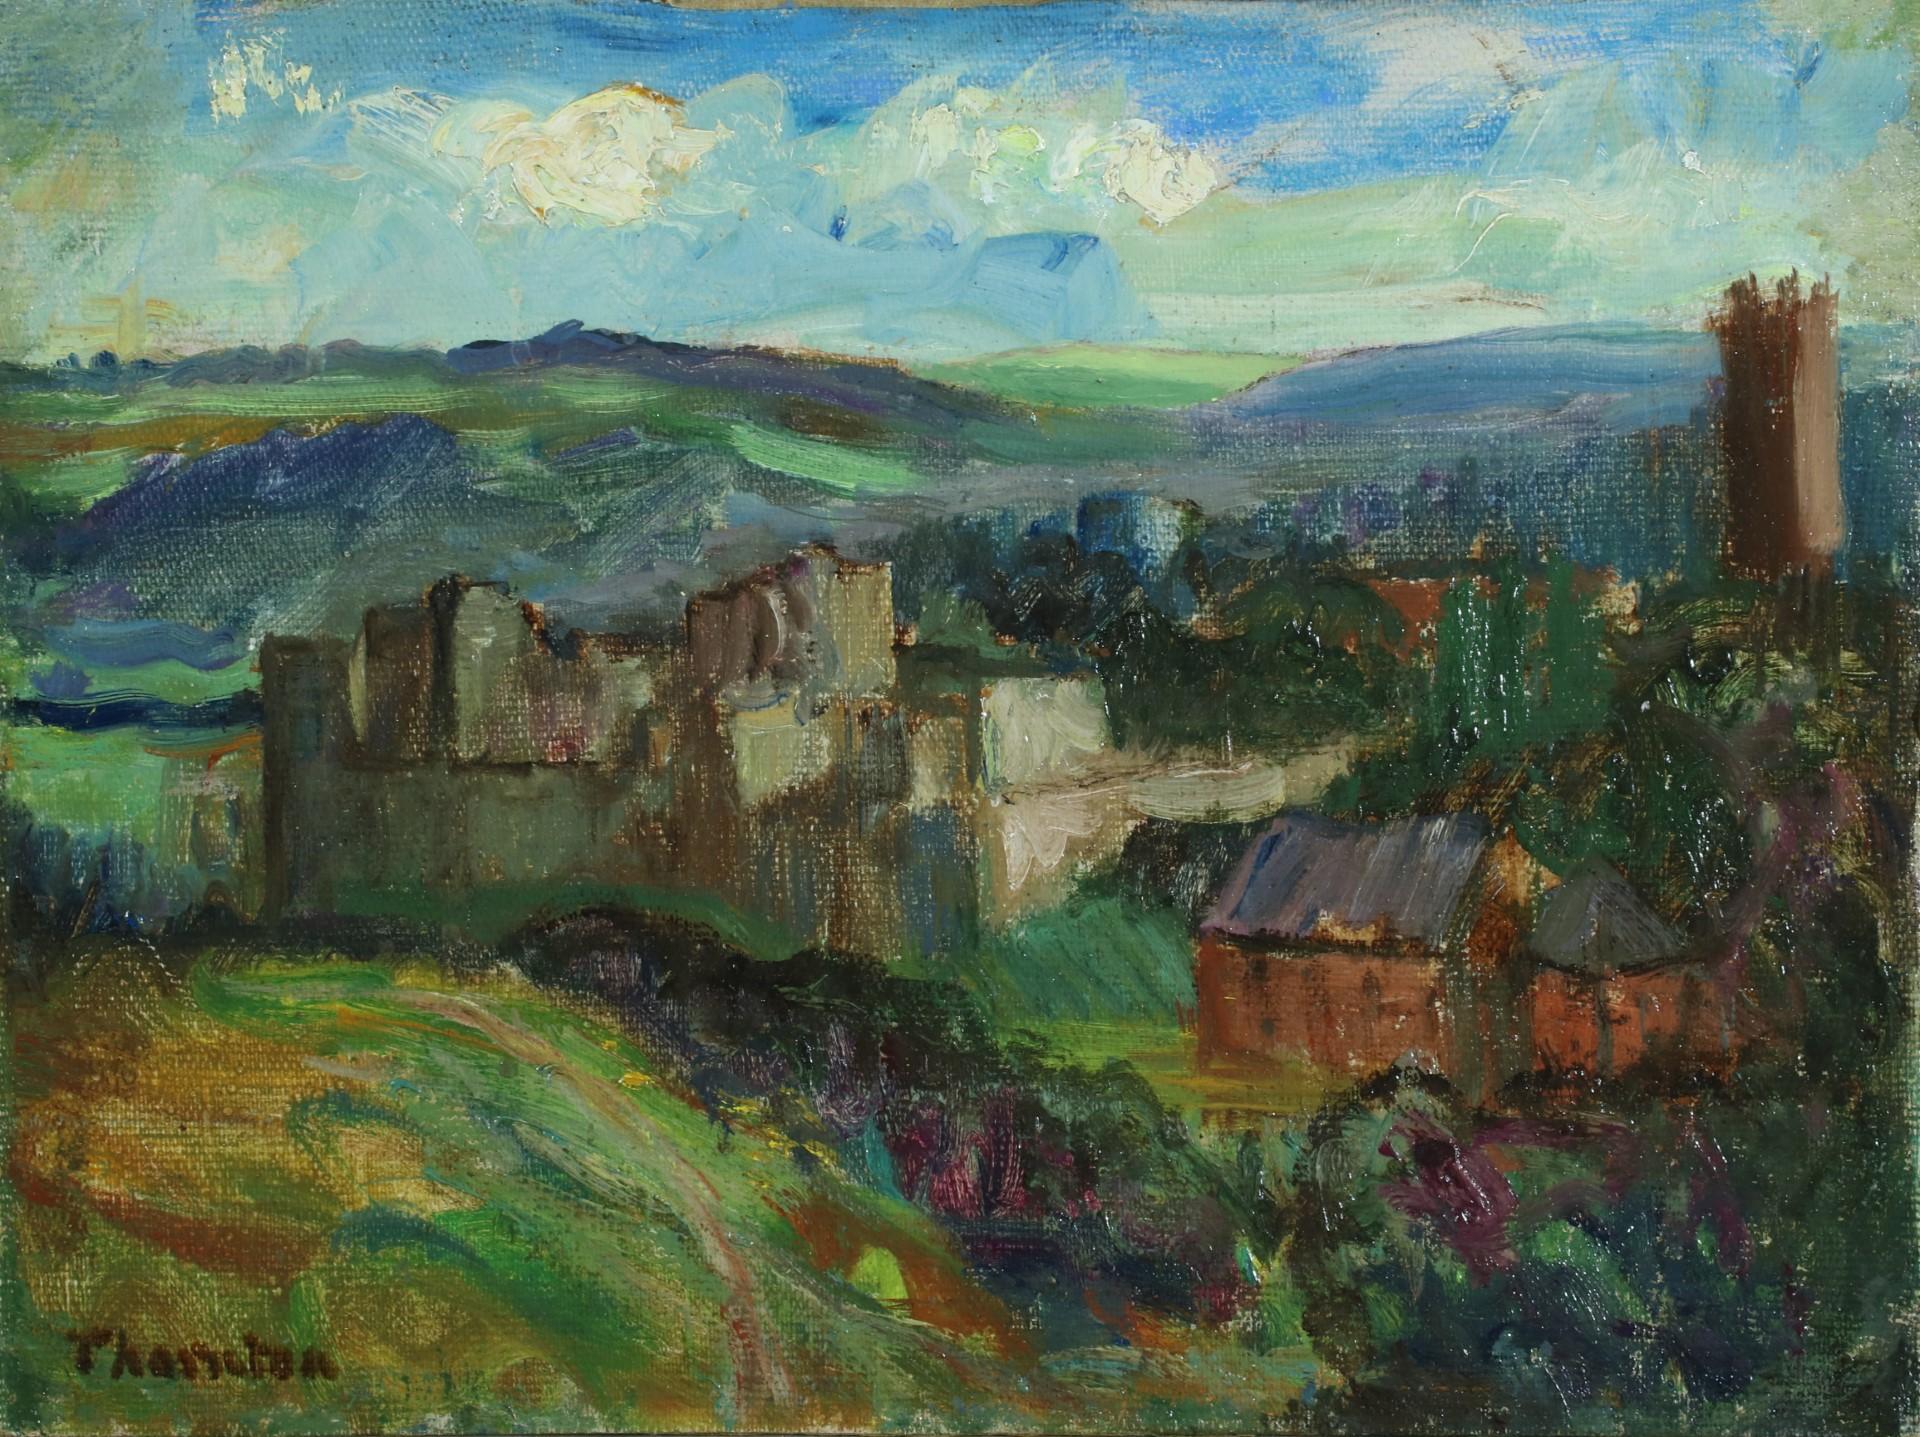 Landscape Painting Alfred Thornton - Castle de Ludlow, Shropshire avec Clee Hills au-delà  - paysage lumineux à l'huile